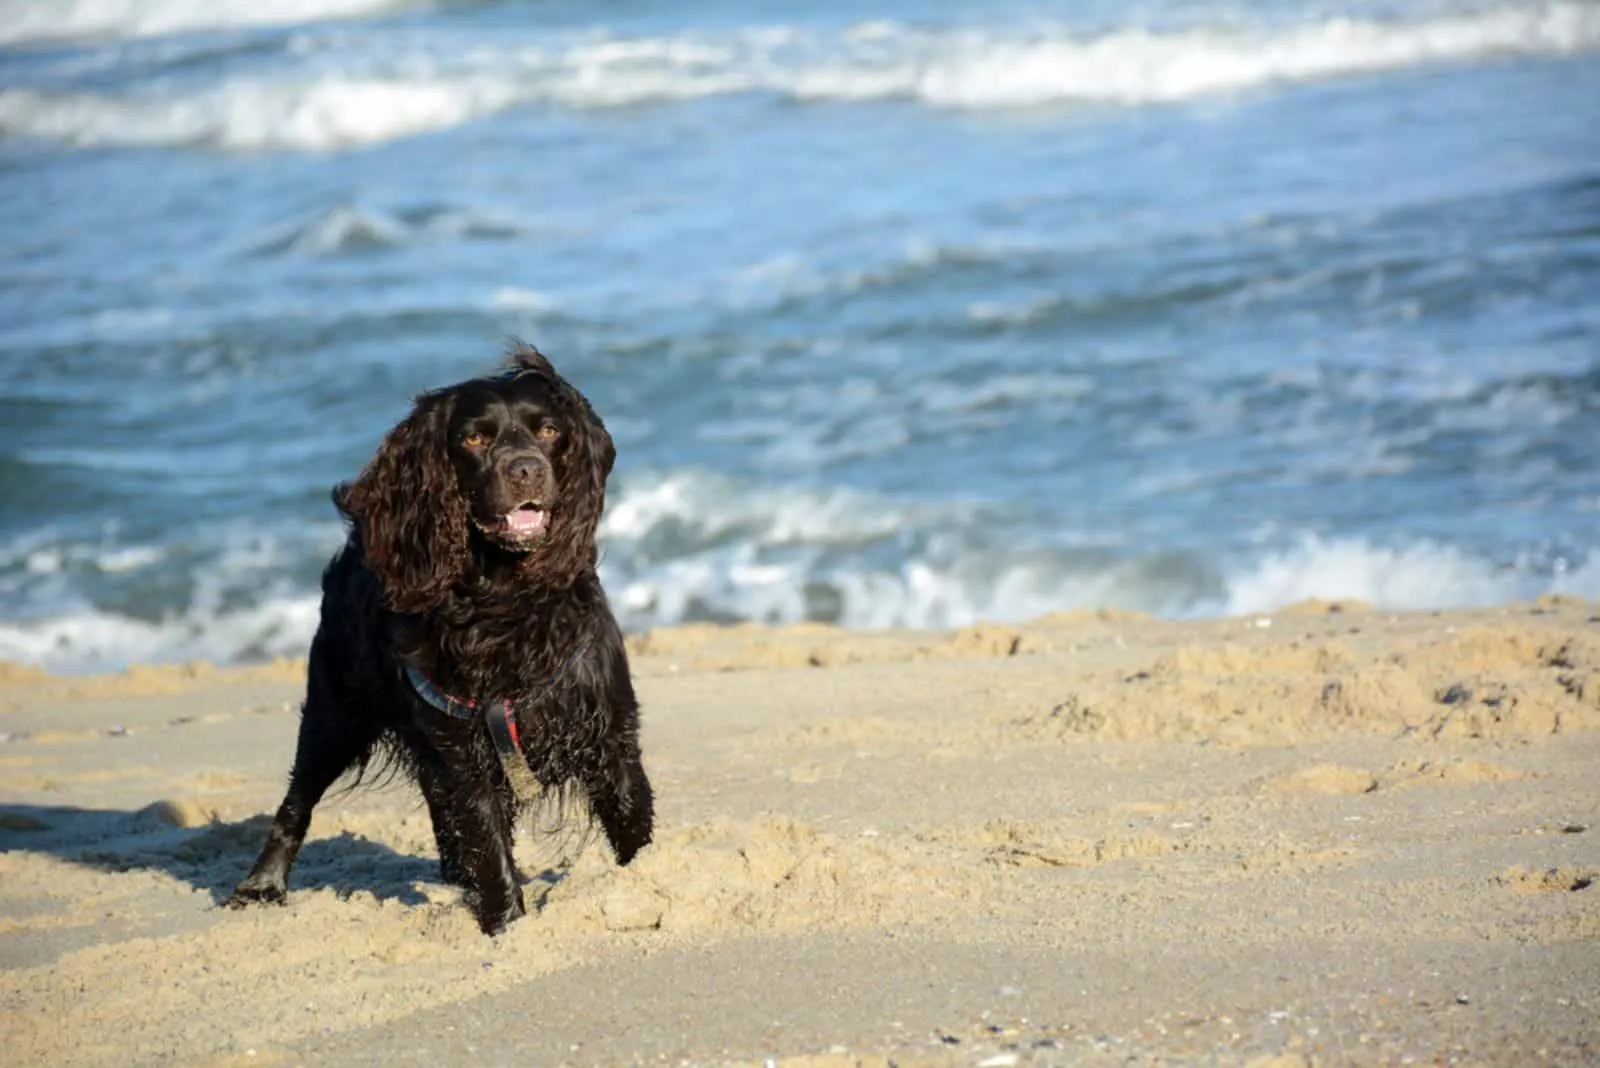 Boykin Spaniel on the beach